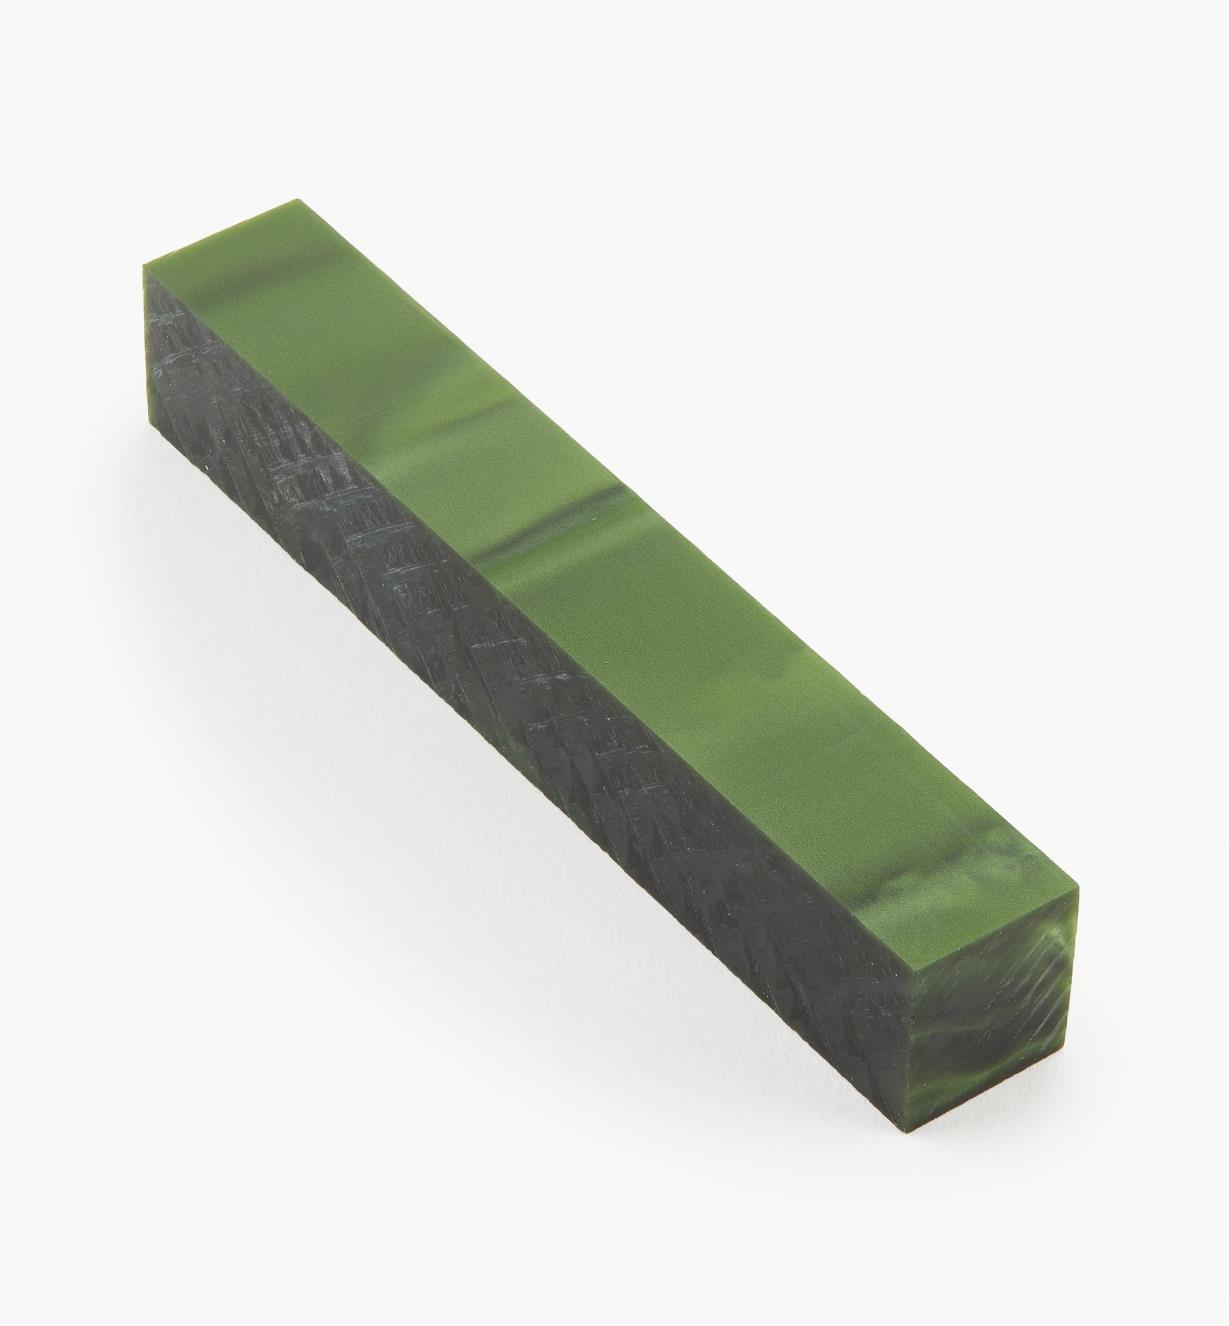 88K7892 - Carrelet en résine acrylique vert forêt, l'unité